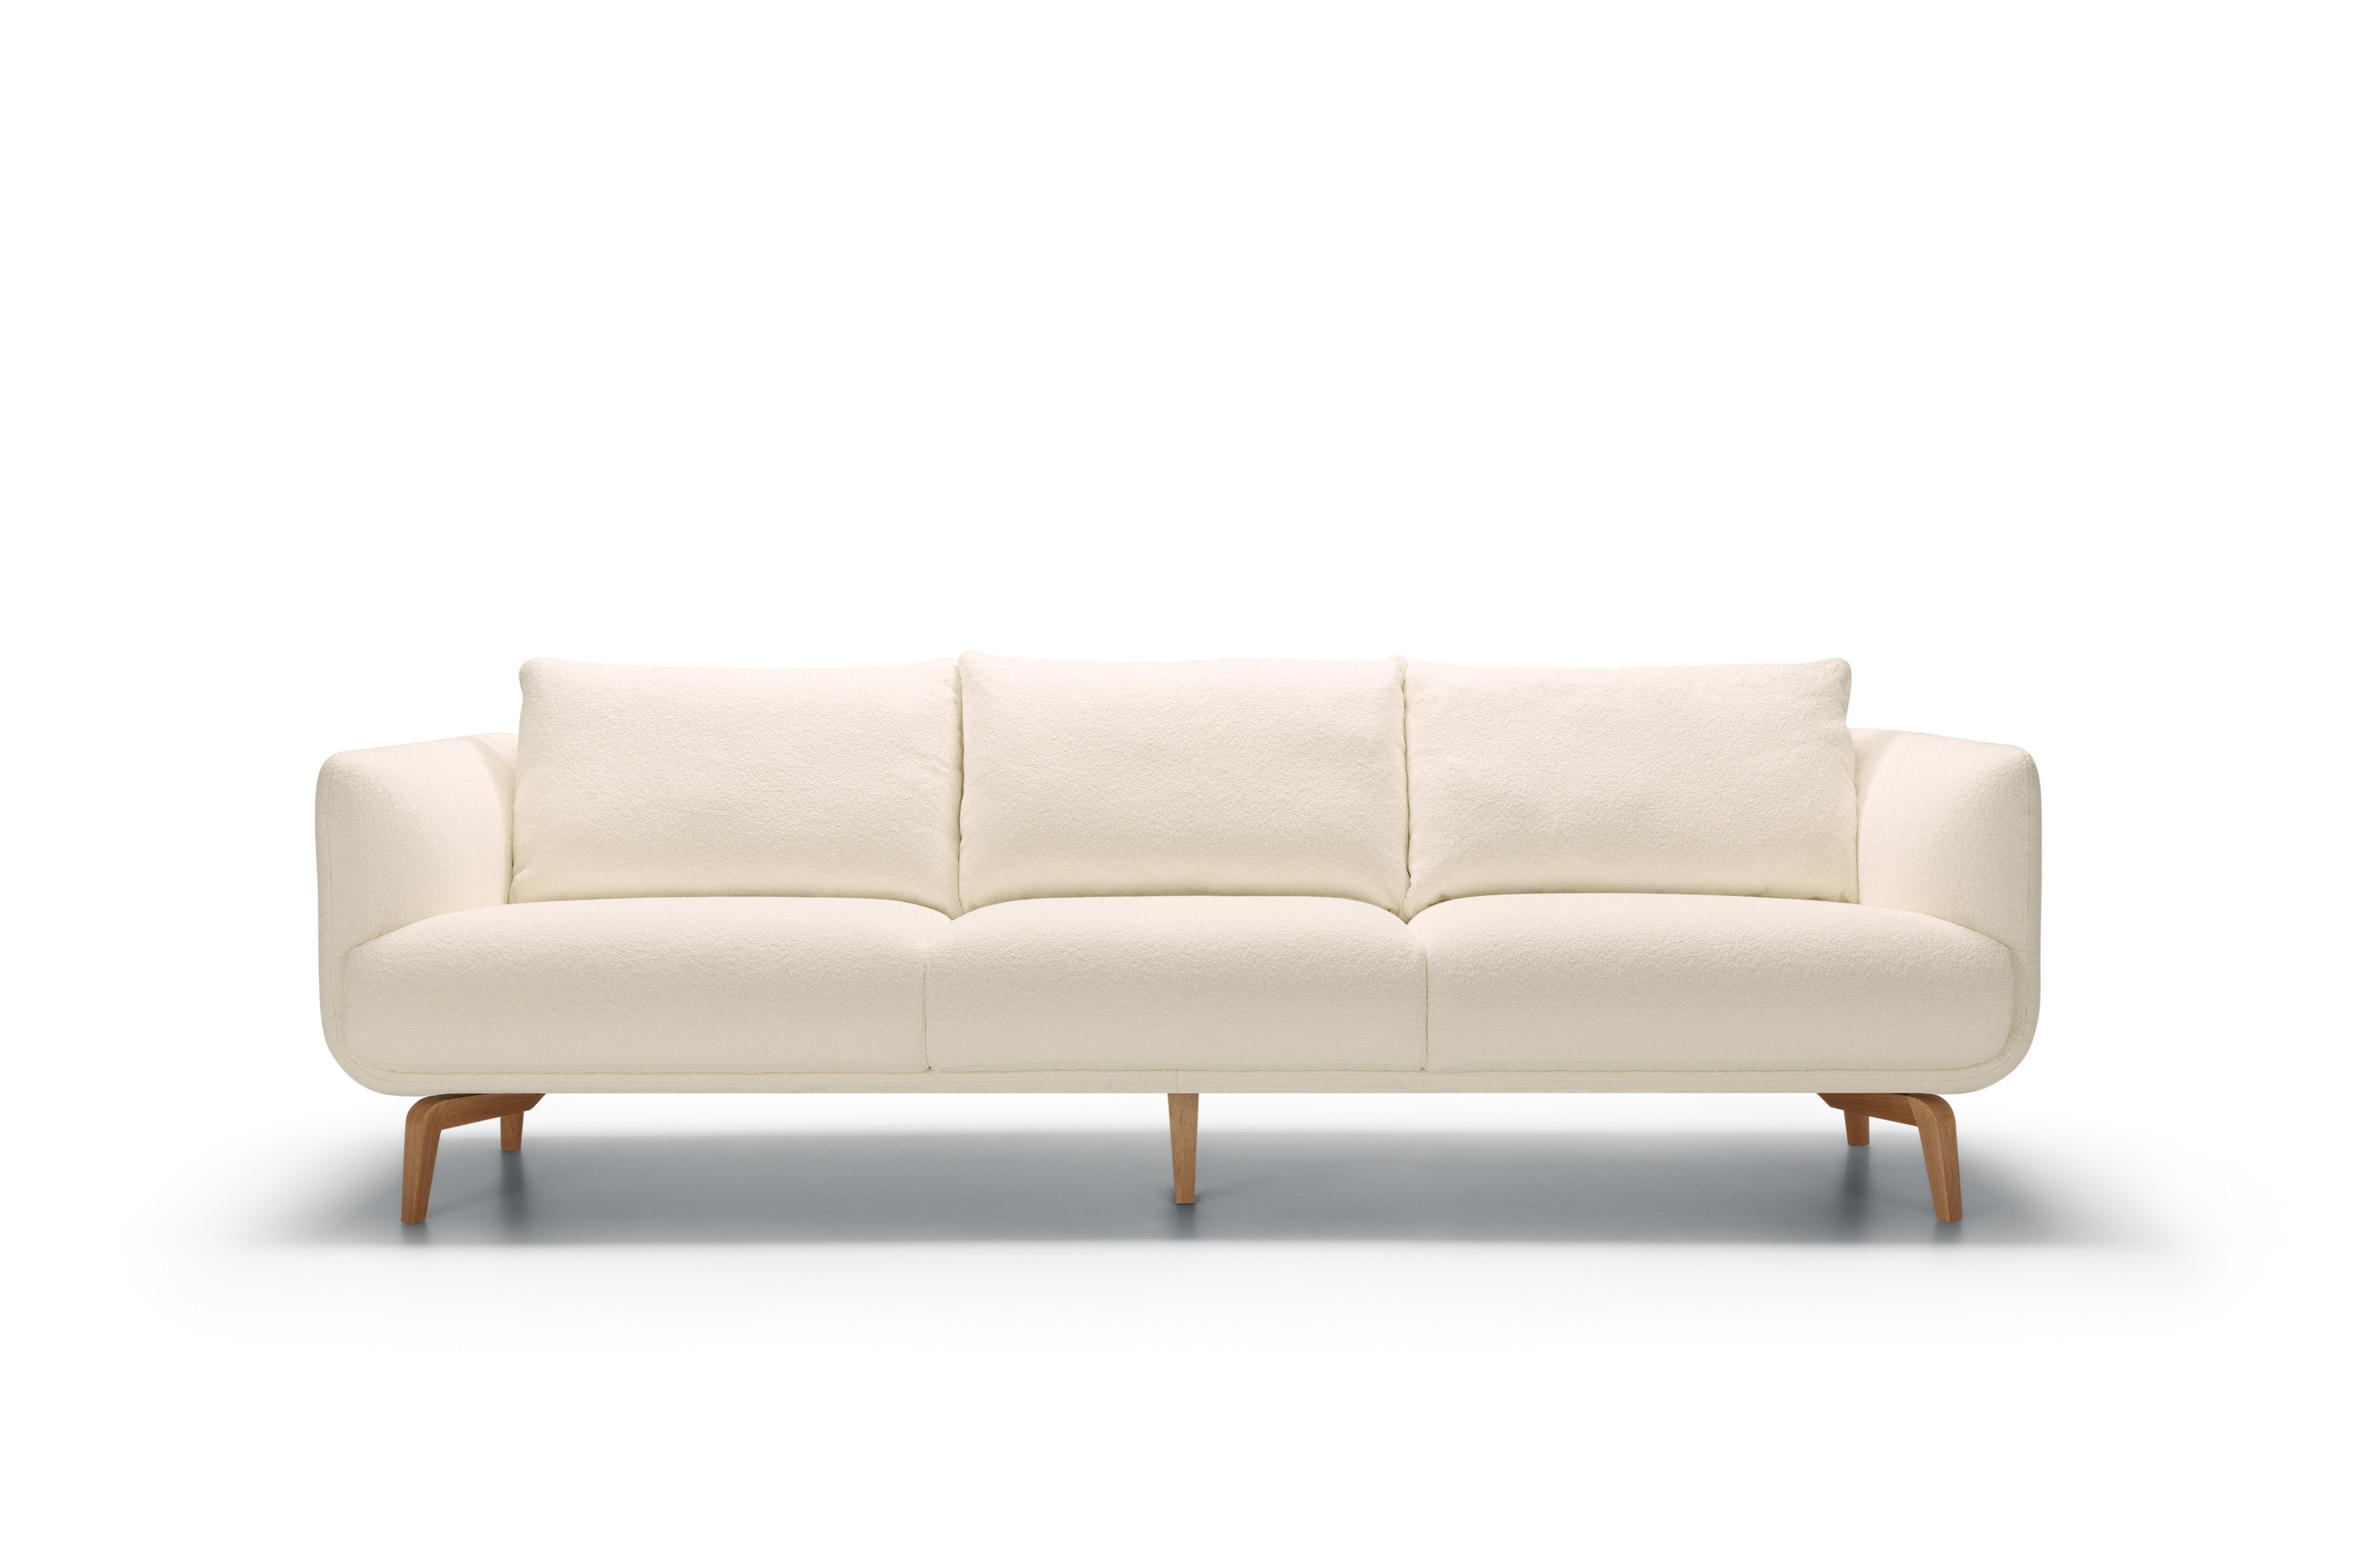 Mastrella Murano 4 Seater Divided Sofa